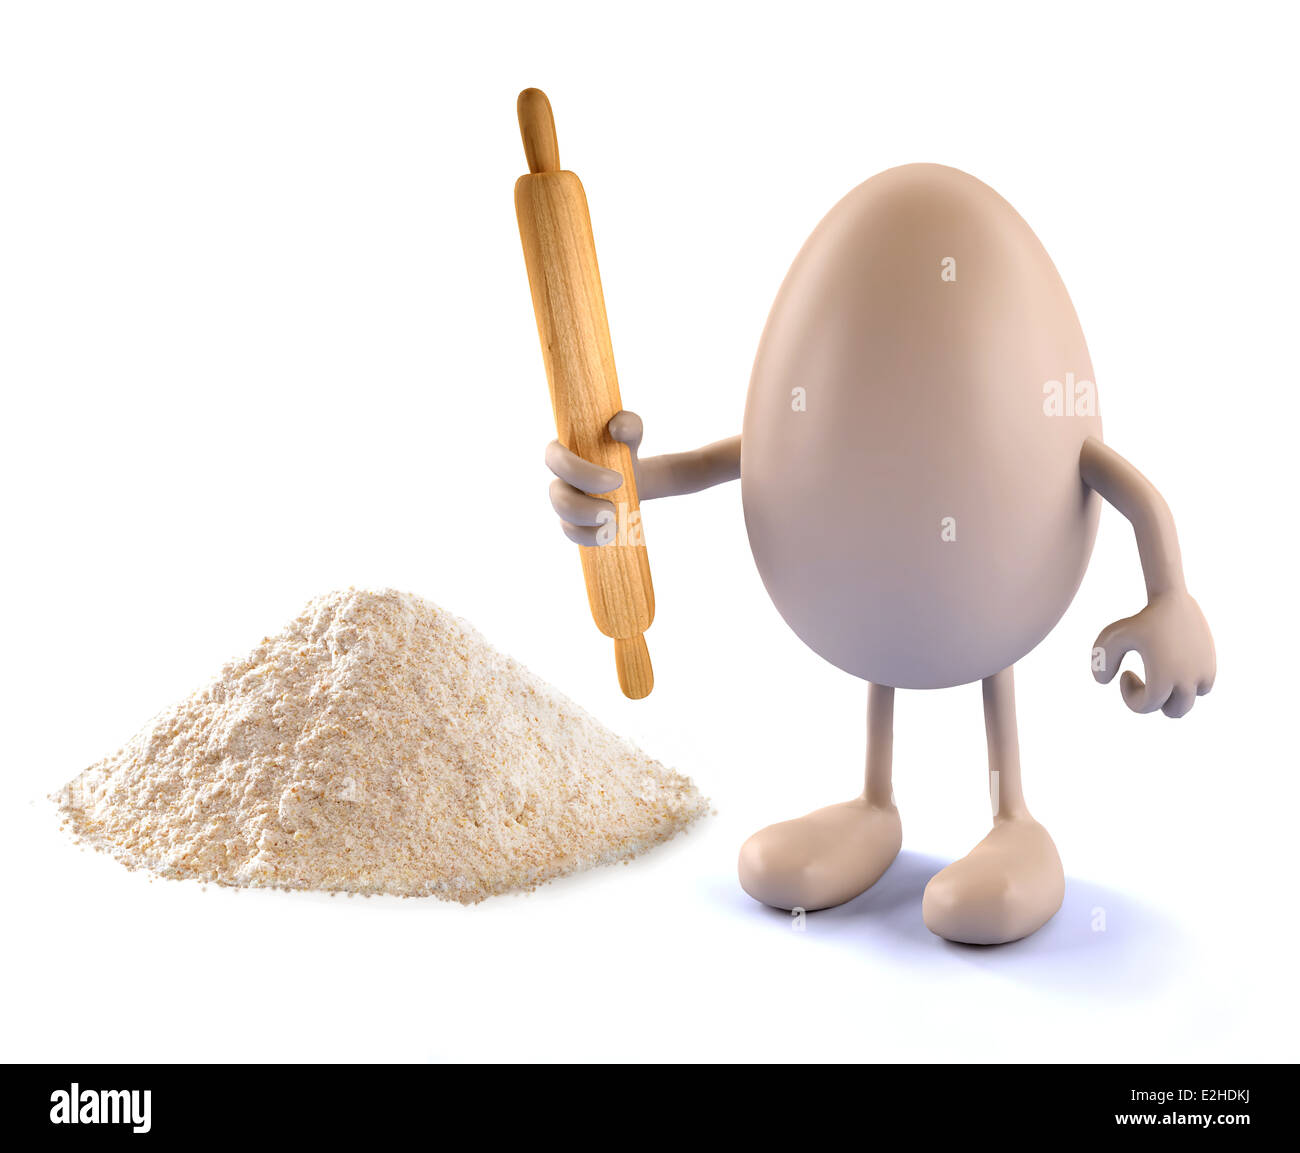 Uovo con le braccia, le gambe, il mattarello sulla mano e farina, 3d illustrazione Foto Stock